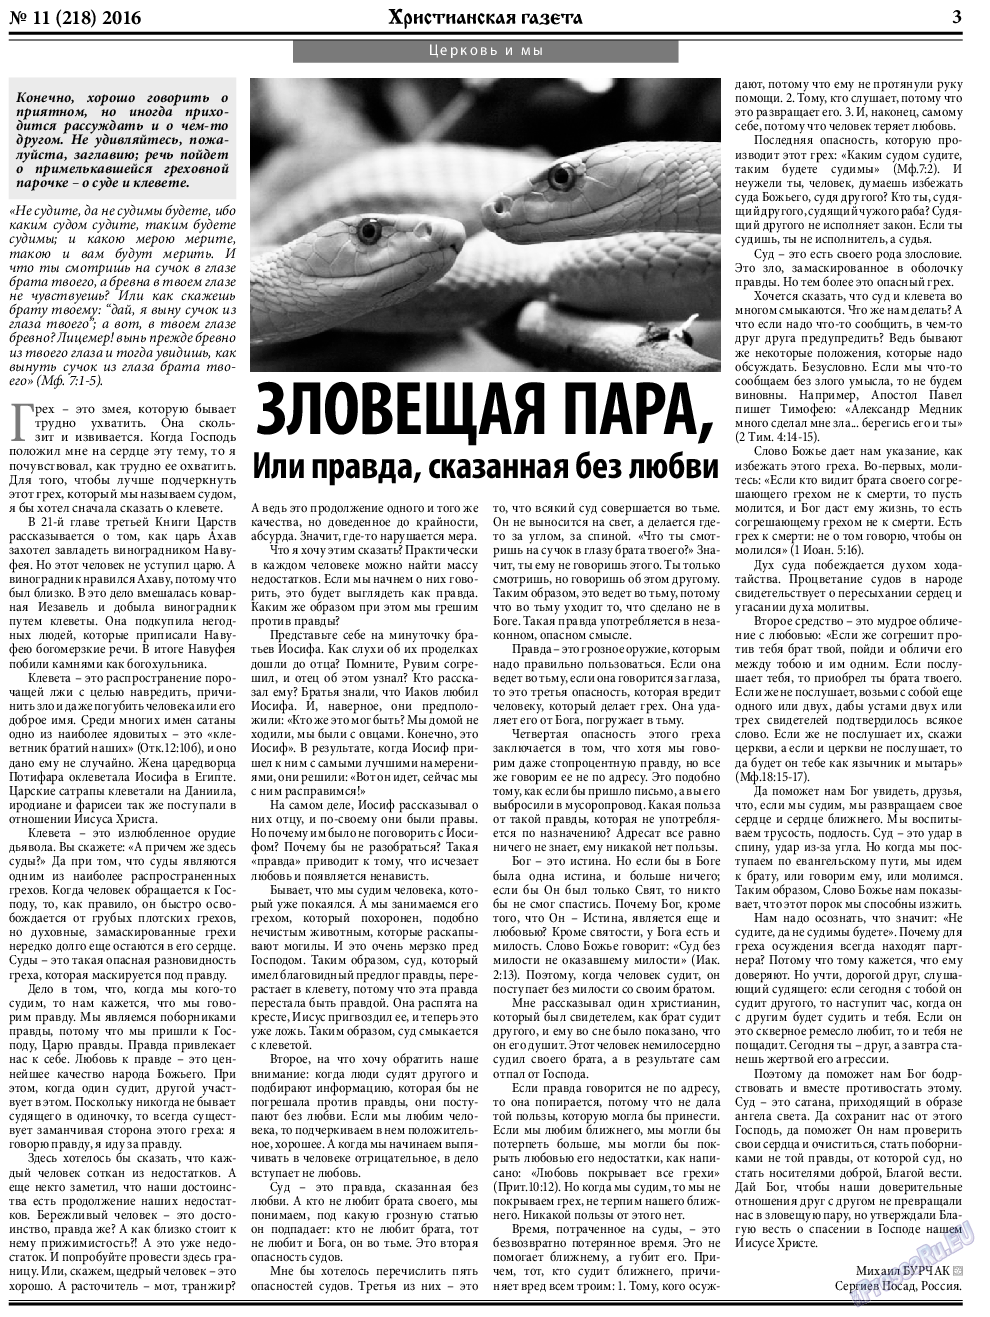 Христианская газета, газета. 2016 №11 стр.3